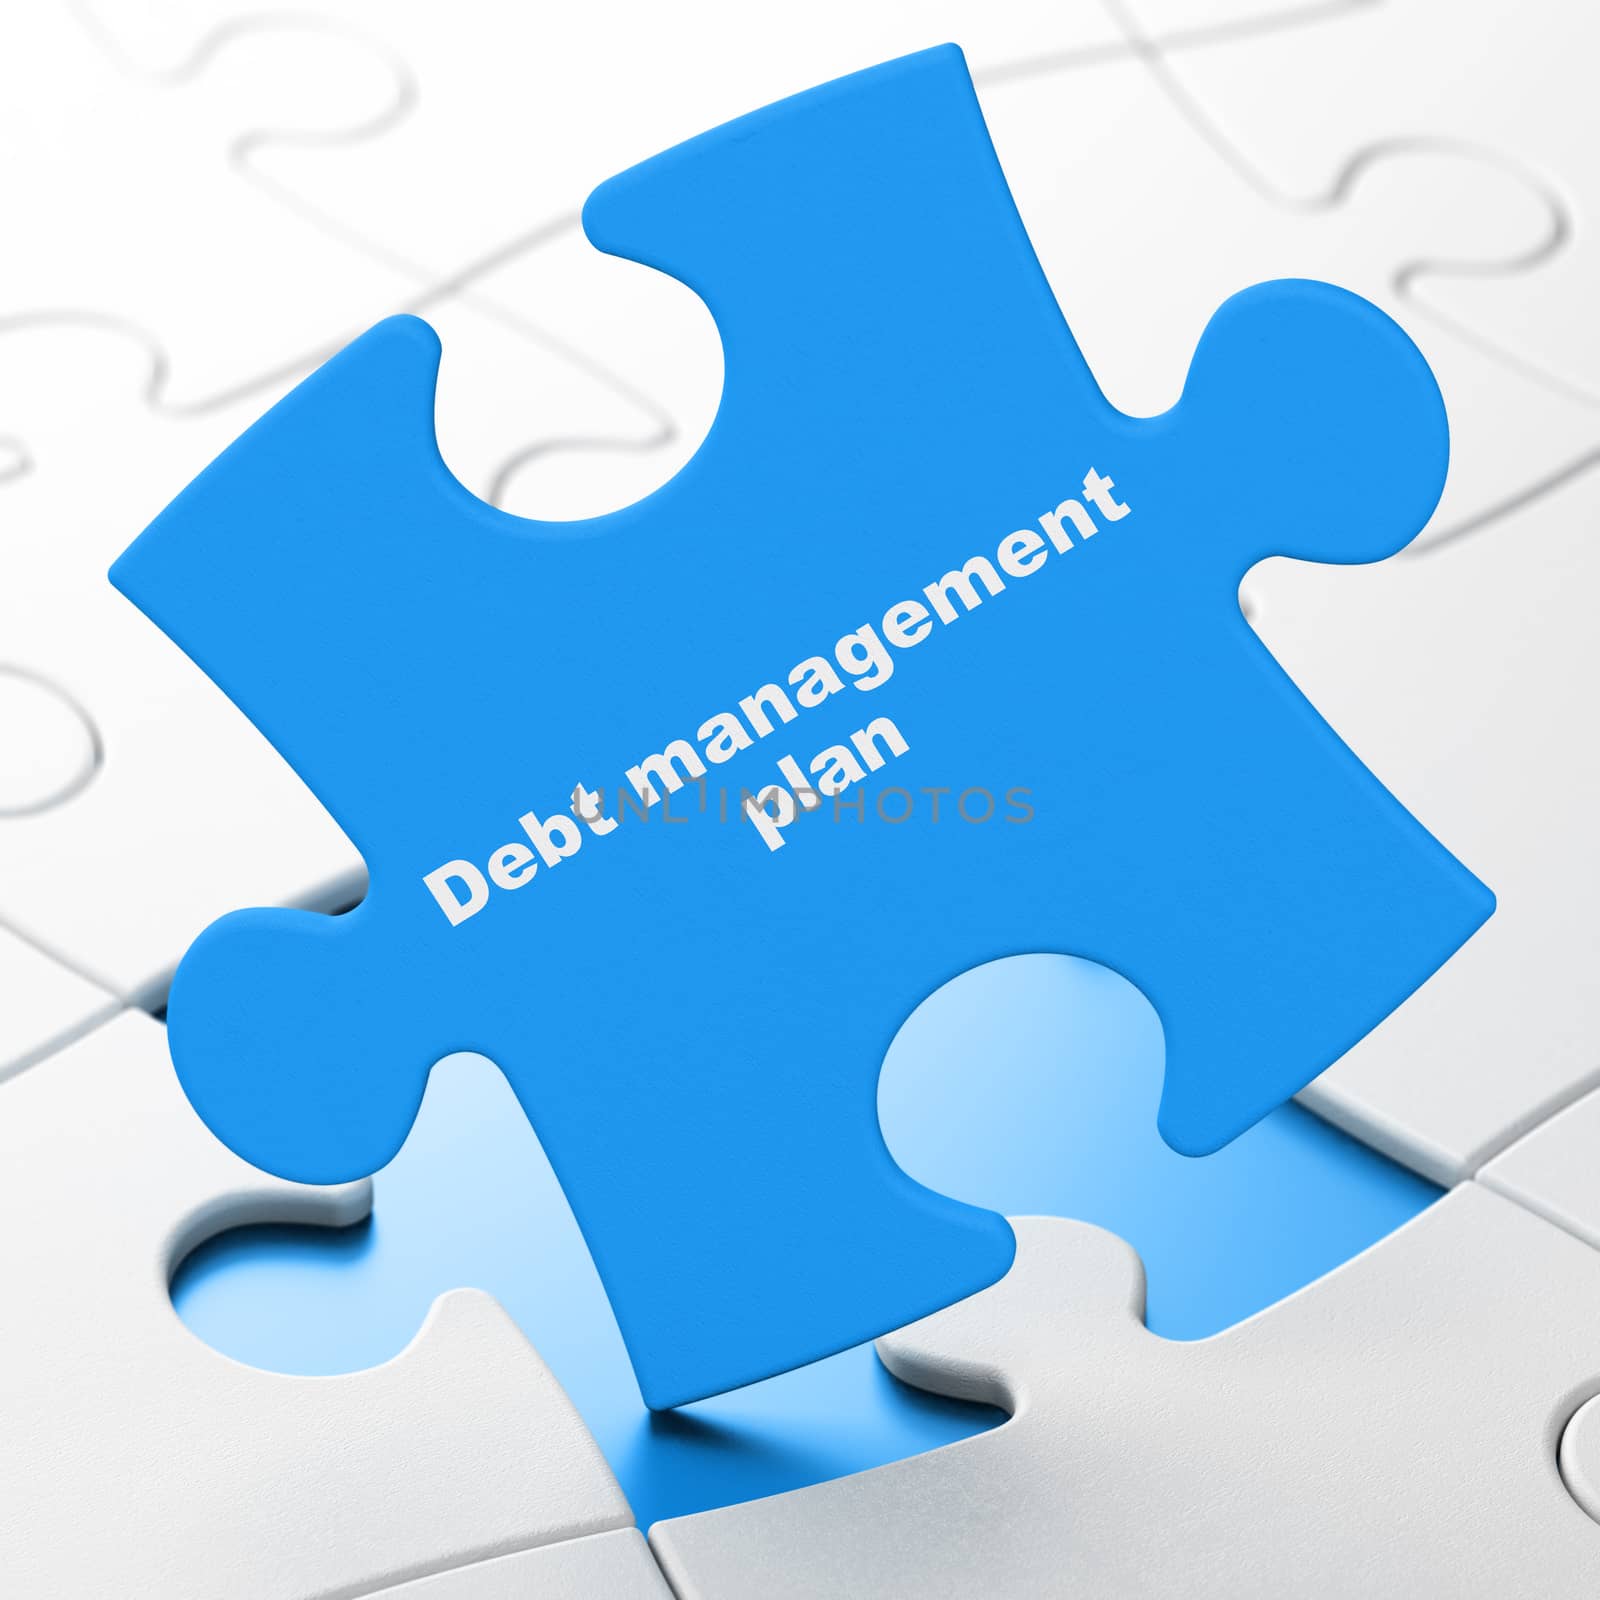 Business concept: Debt Management Plan on Blue puzzle pieces background, 3D rendering